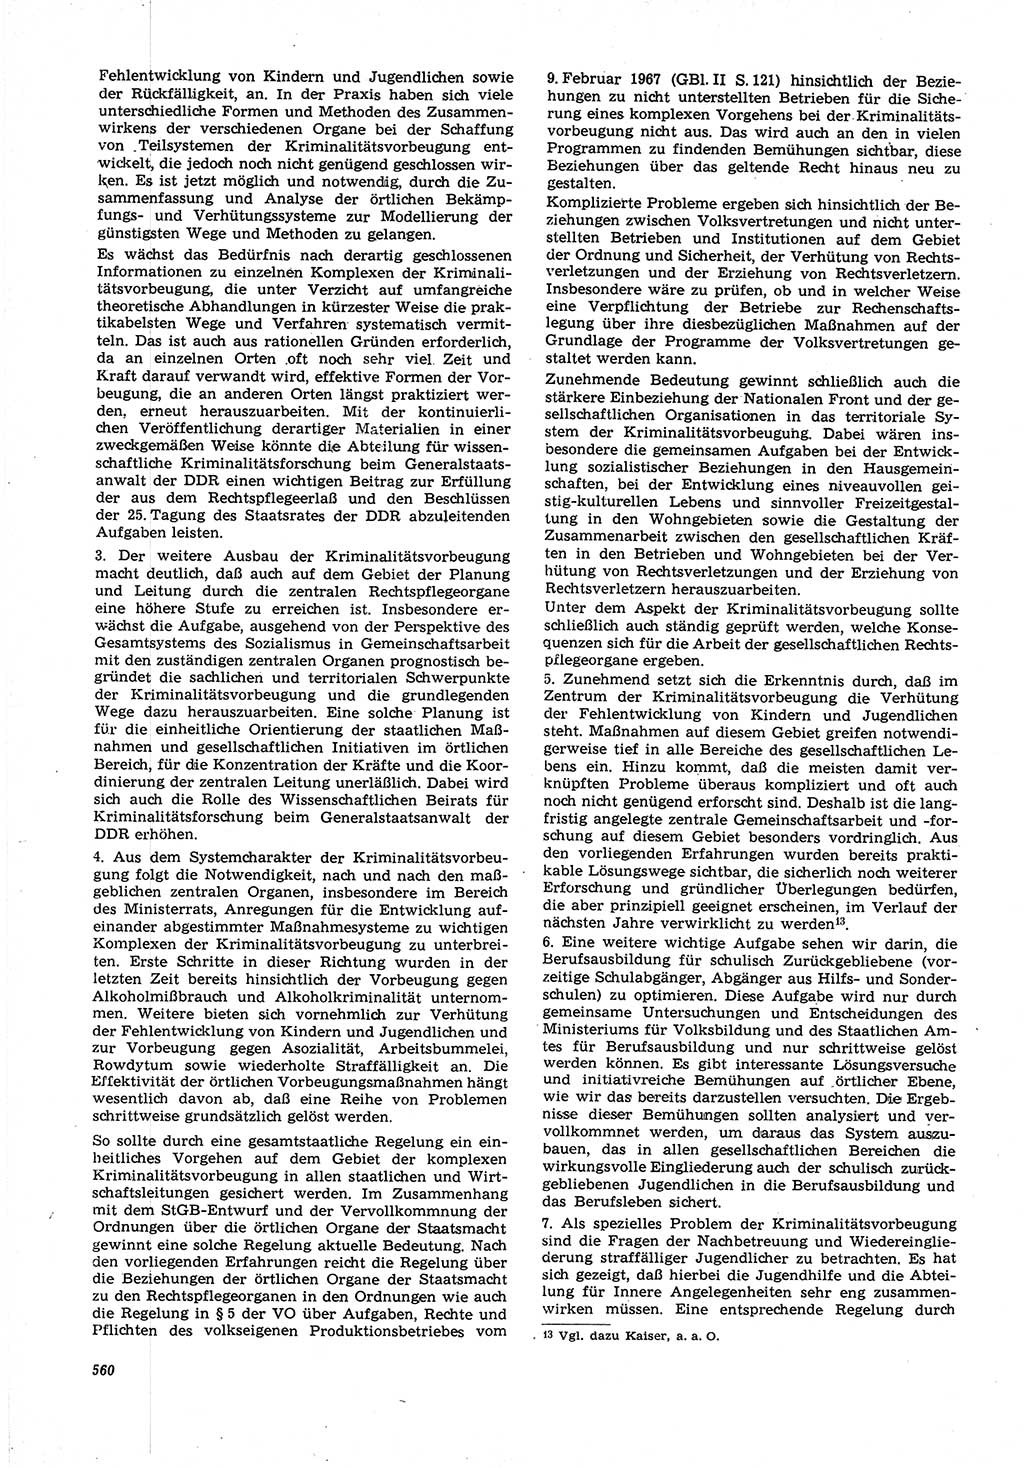 Neue Justiz (NJ), Zeitschrift für Recht und Rechtswissenschaft [Deutsche Demokratische Republik (DDR)], 21. Jahrgang 1967, Seite 560 (NJ DDR 1967, S. 560)